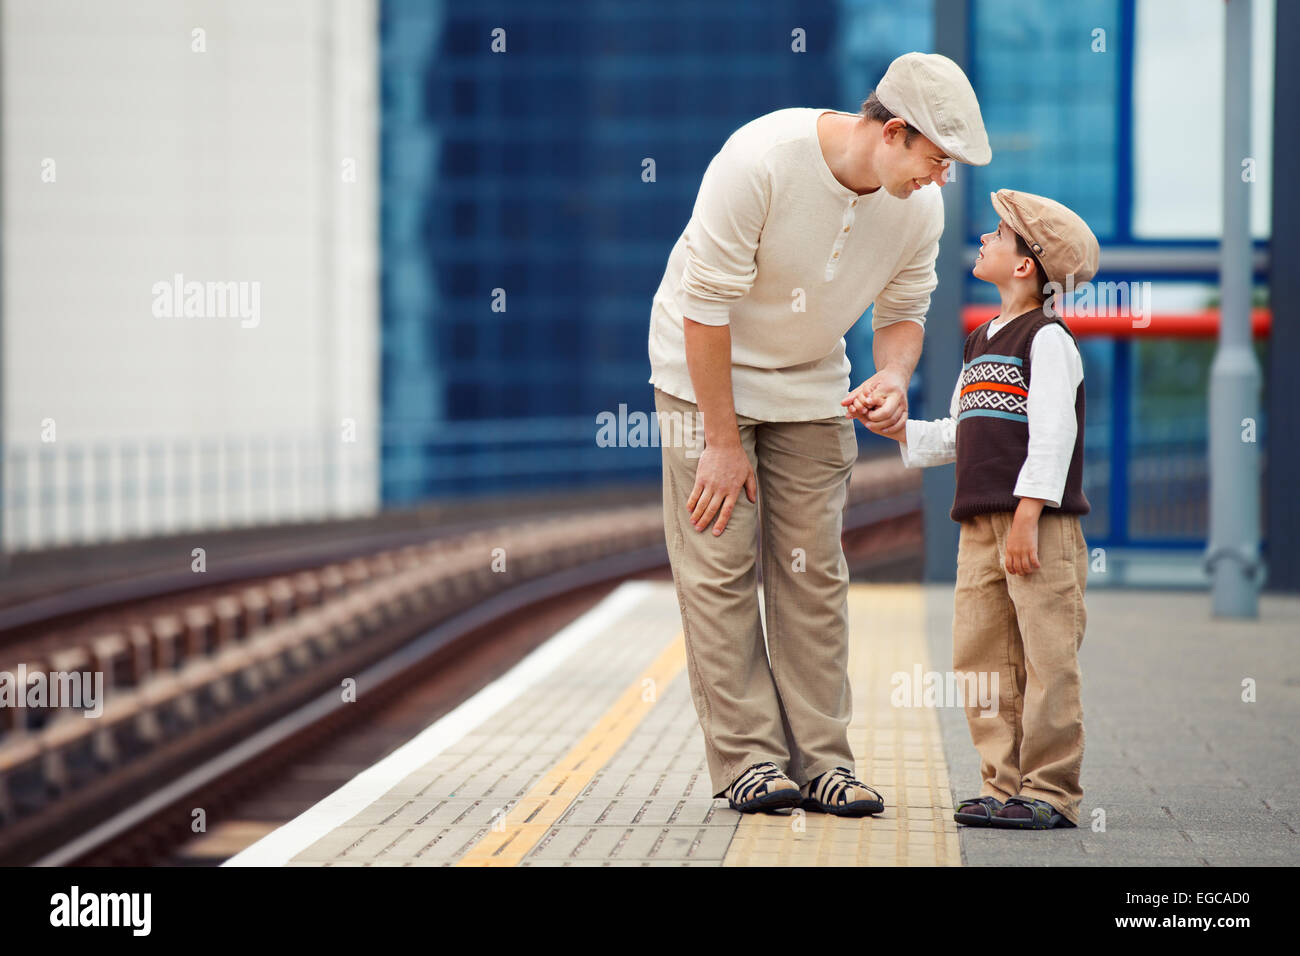 Поезд папа мама. Мальчик на перроне. Дети на перроне с родителями. Отец и сын на вокзале. Отец и сын в одной профессии.